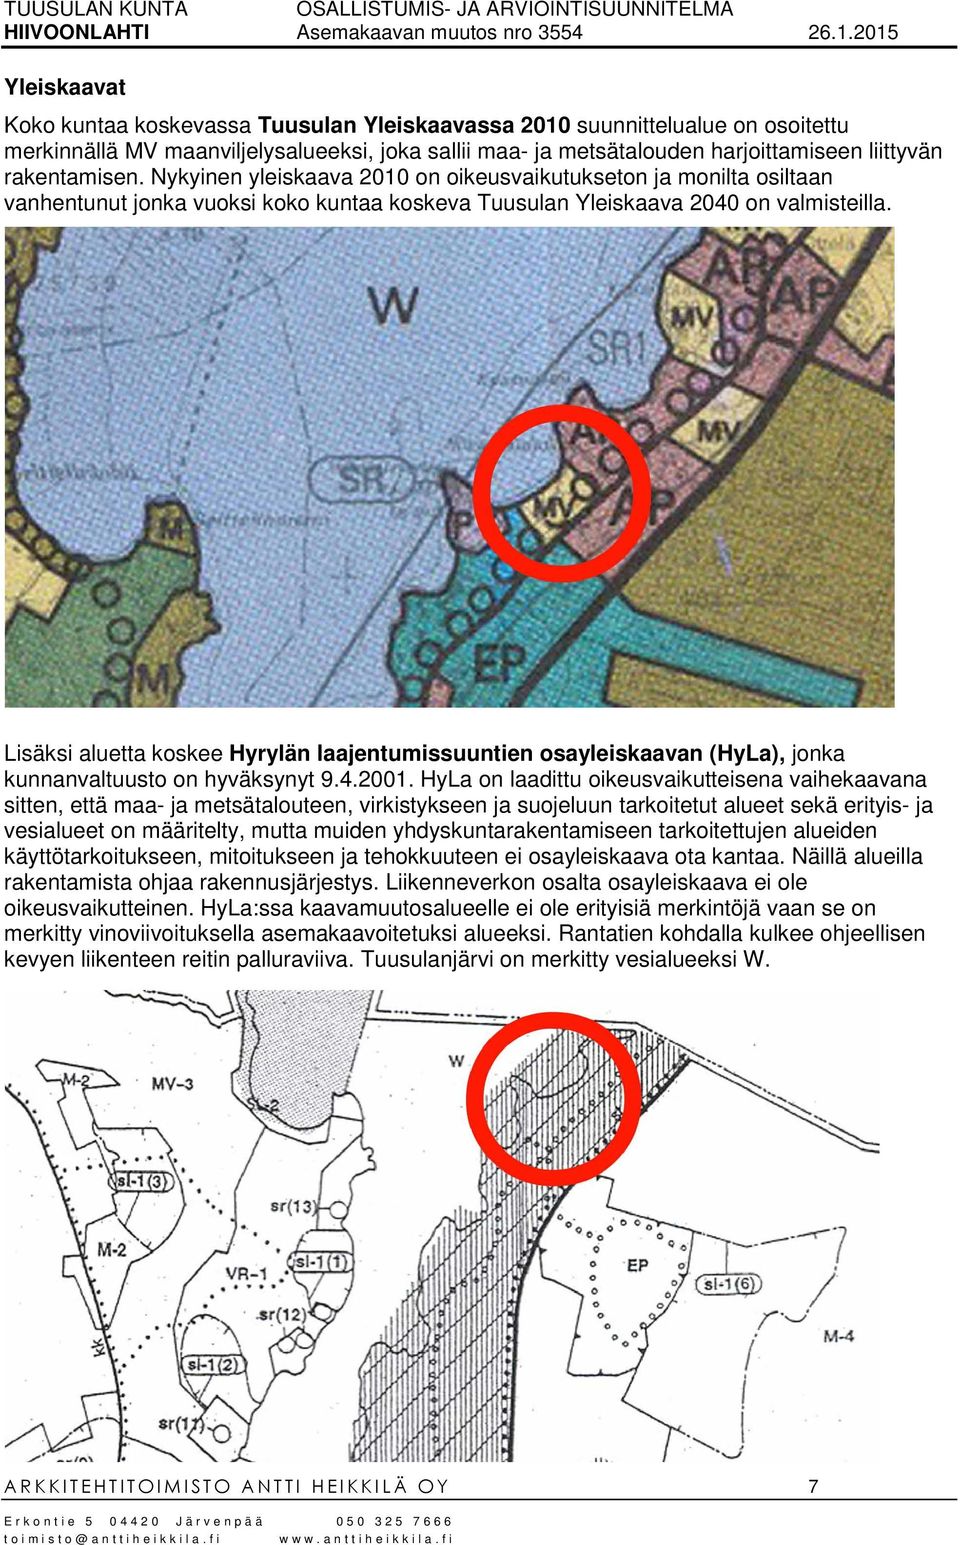 Lisäksi aluetta koskee Hyrylän laajentumissuuntien osayleiskaavan (HyLa), jonka kunnanvaltuusto on hyväksynyt 9.4.2001.